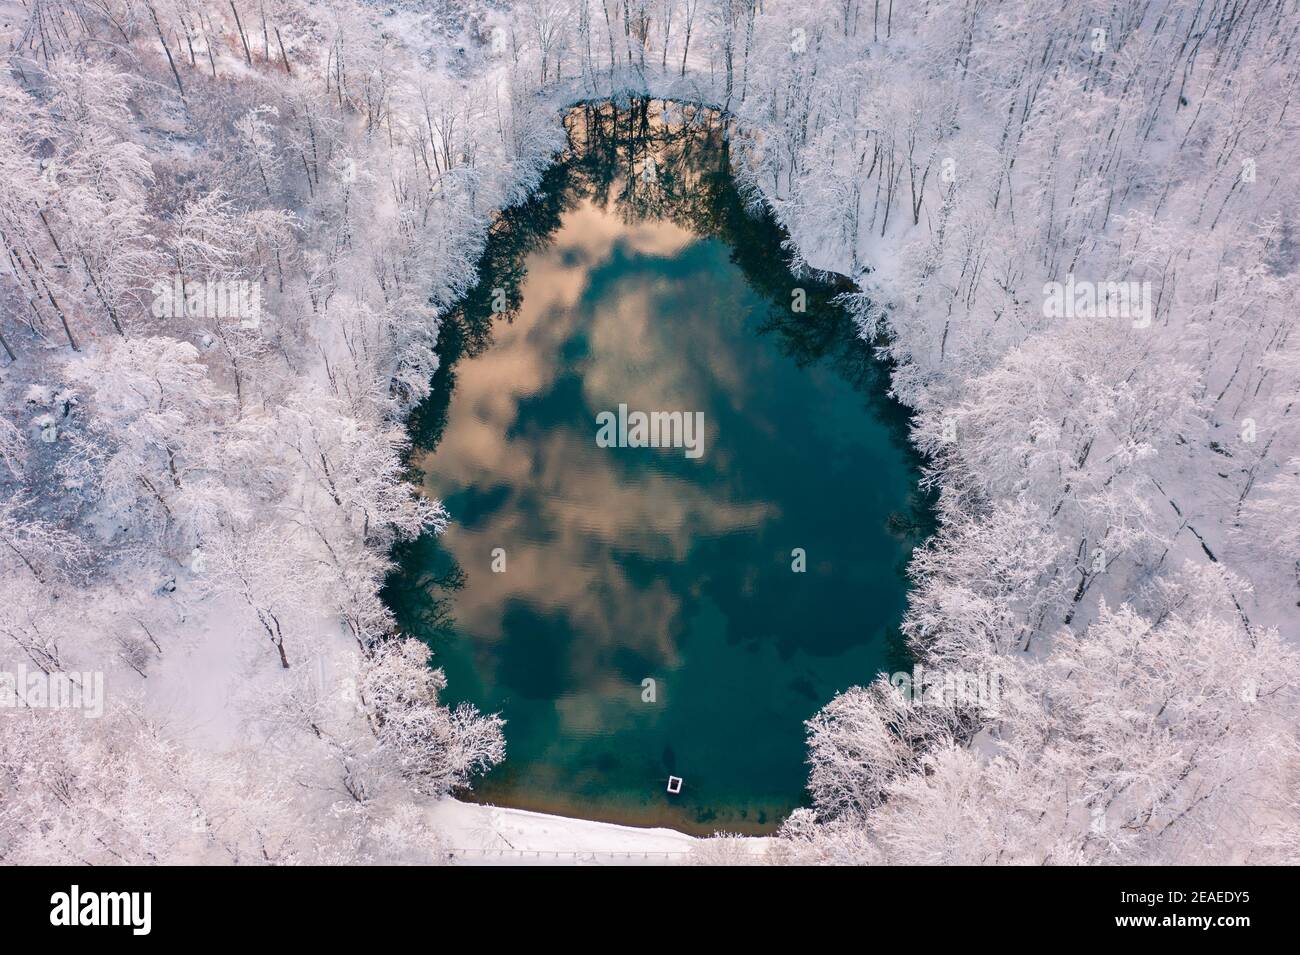 Szilvásvárad, Ungarn - Luftaufnahme des berühmten Oberen Sees auch bekannt als Sipovics tengerszem mit kristallklarem türkisfarbenem Wasser. Verschneiten Winterwald Stockfoto